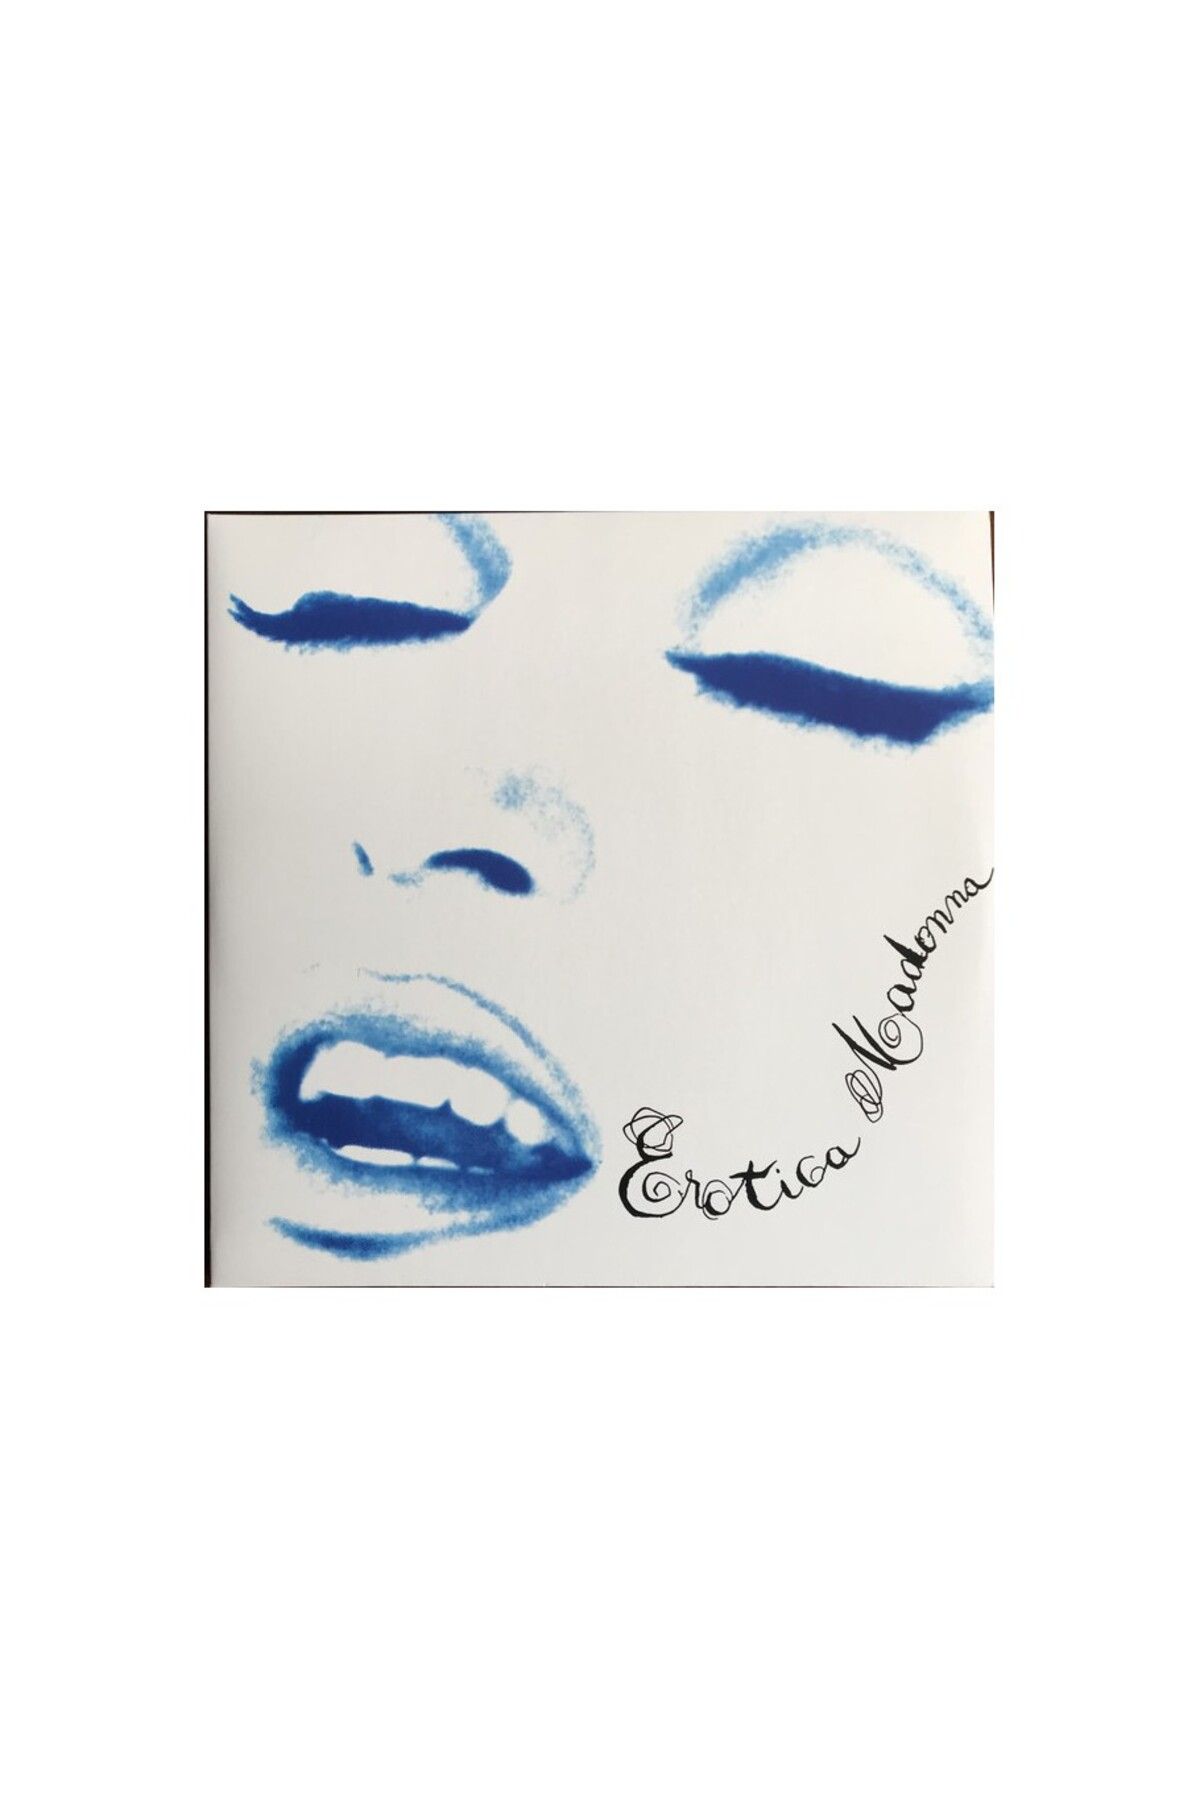 Warner Madonna-Erotica -(2 Plak)